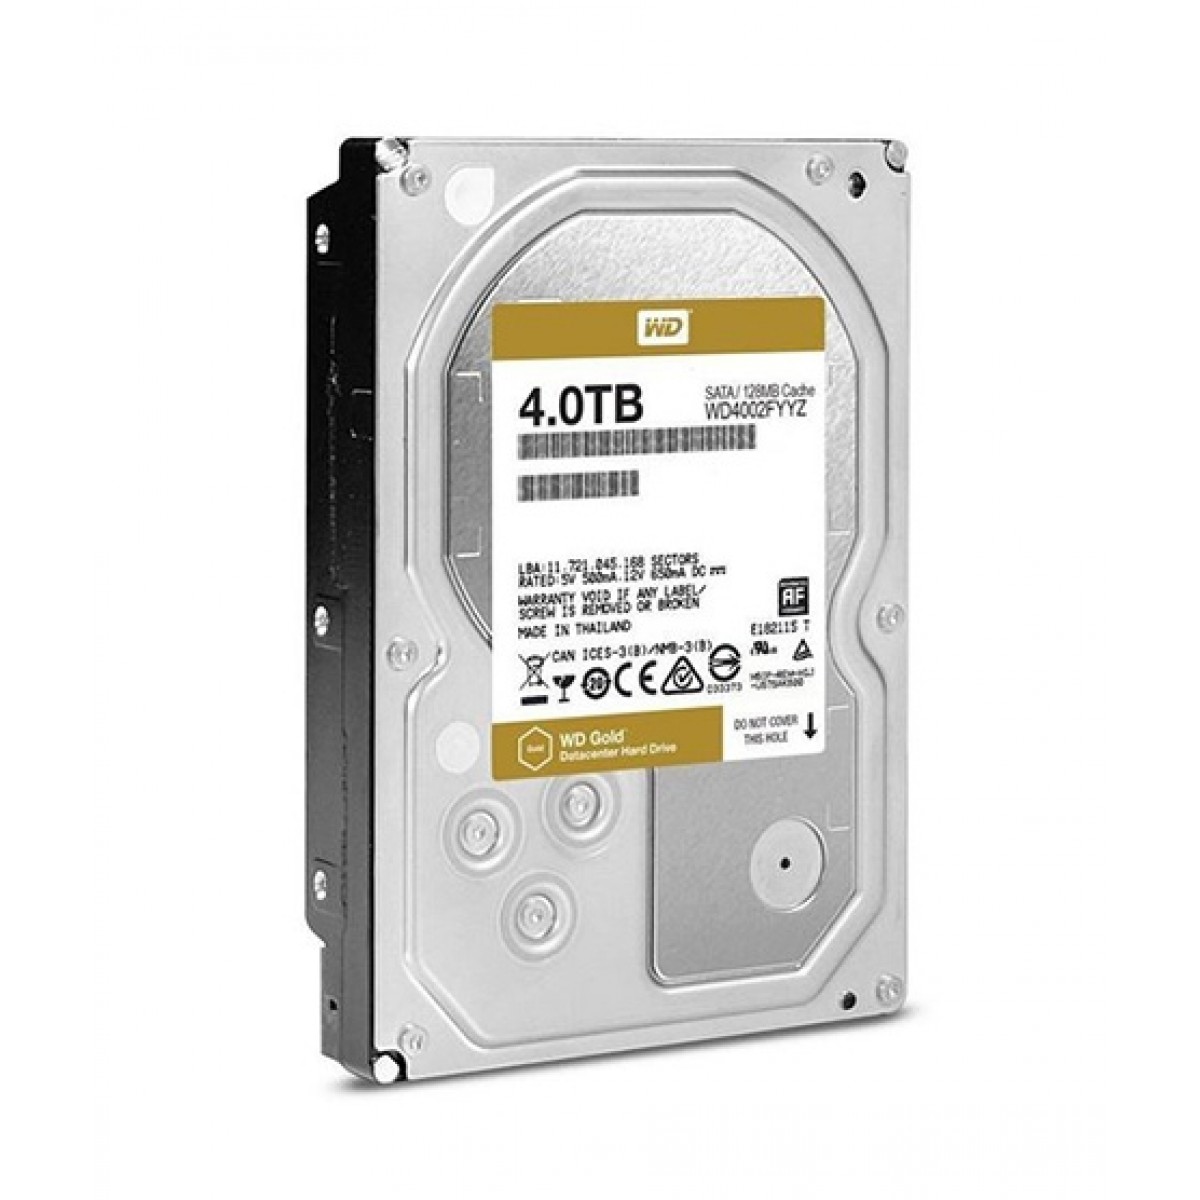 WD Gold 4TB SATA EnterpriseCl internal Hard Drive